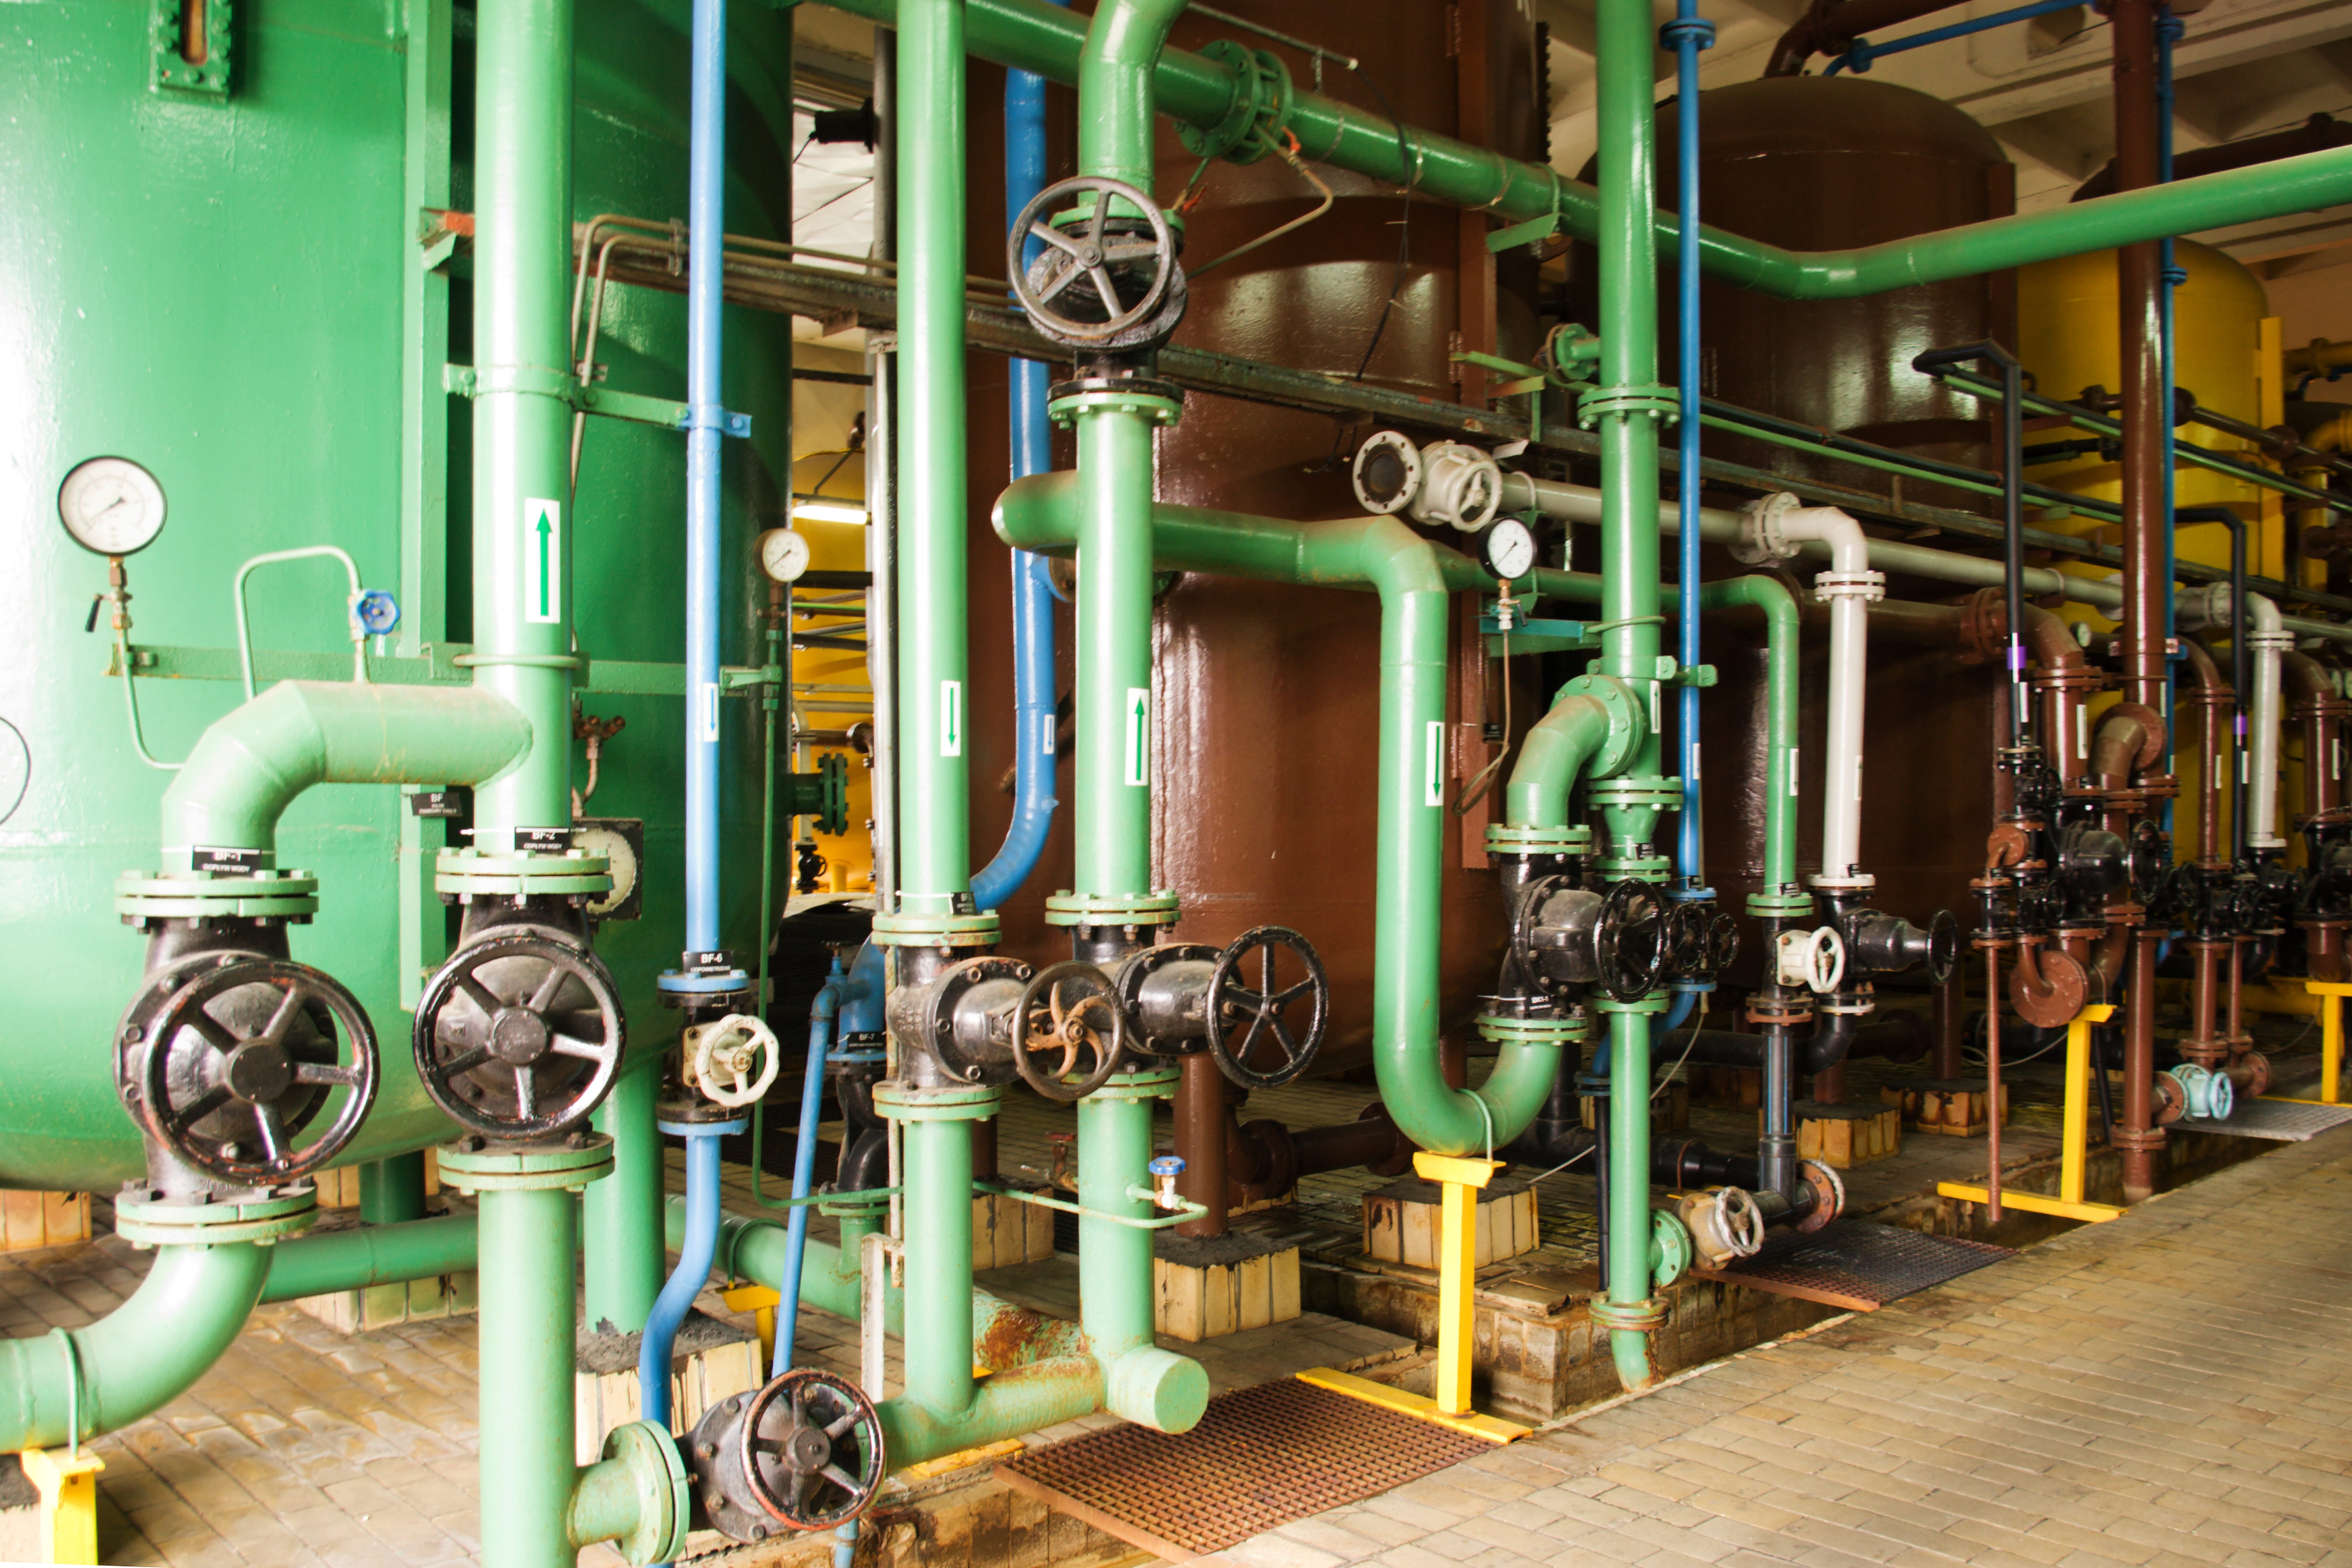 steam boiler with multiple valves